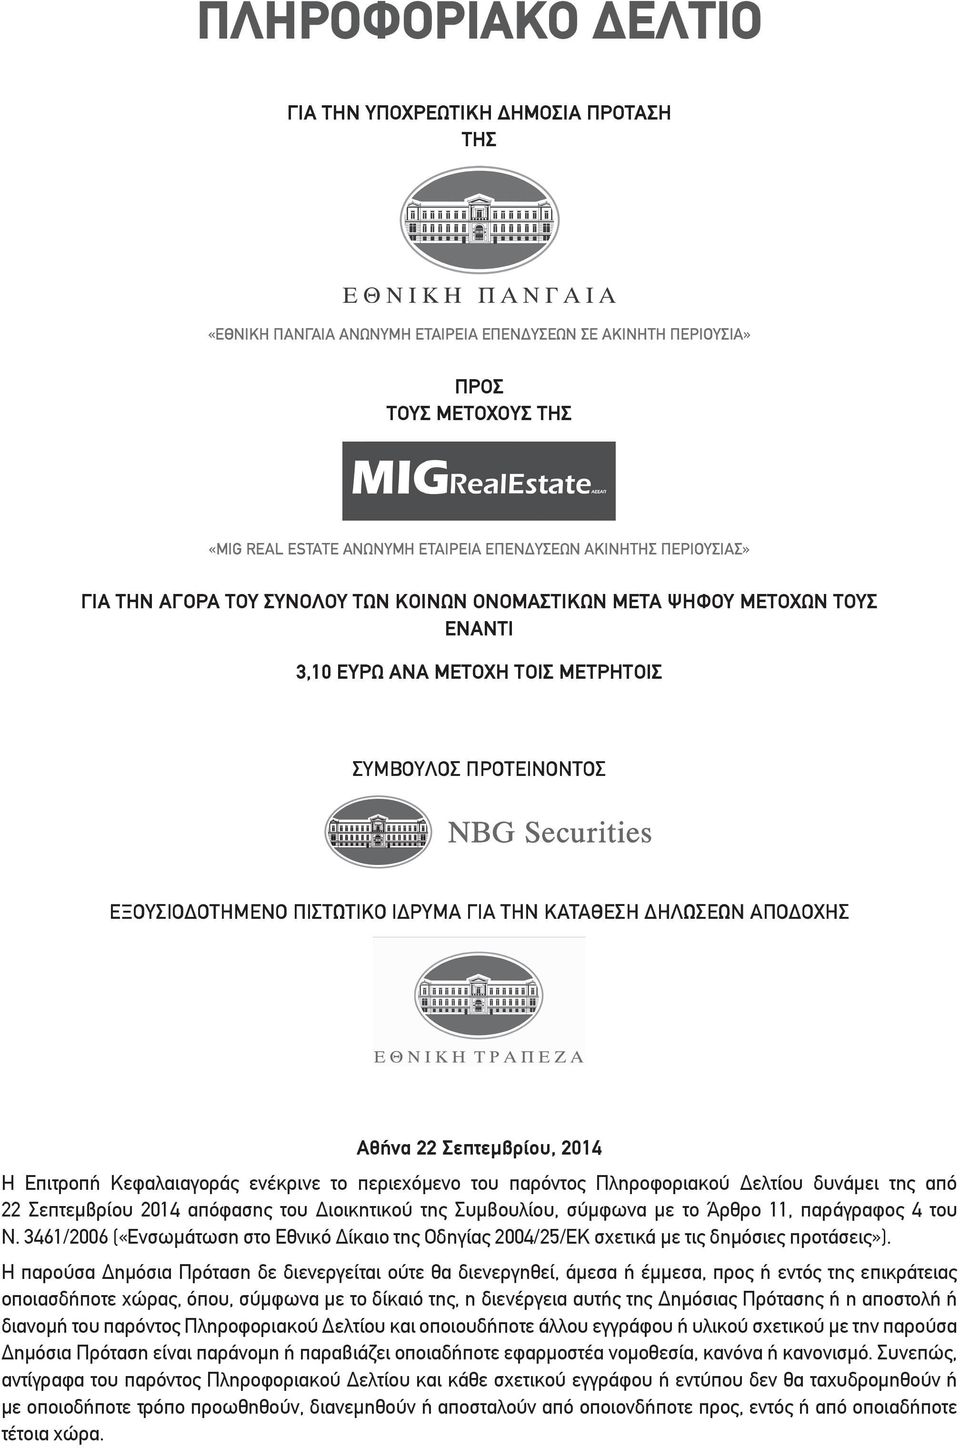 την Κατάθεση Δηλώσεων Αποδοχής Αθήνα 22 Σεπτεμβρίου, 2014 Η Επιτροπή Κεφαλαιαγοράς ενέκρινε το περιεχόμενο του παρόντος Πληροφοριακού Δελτίου δυνάμει της από 22 Σεπτεμβρίου 2014 απόφασης του